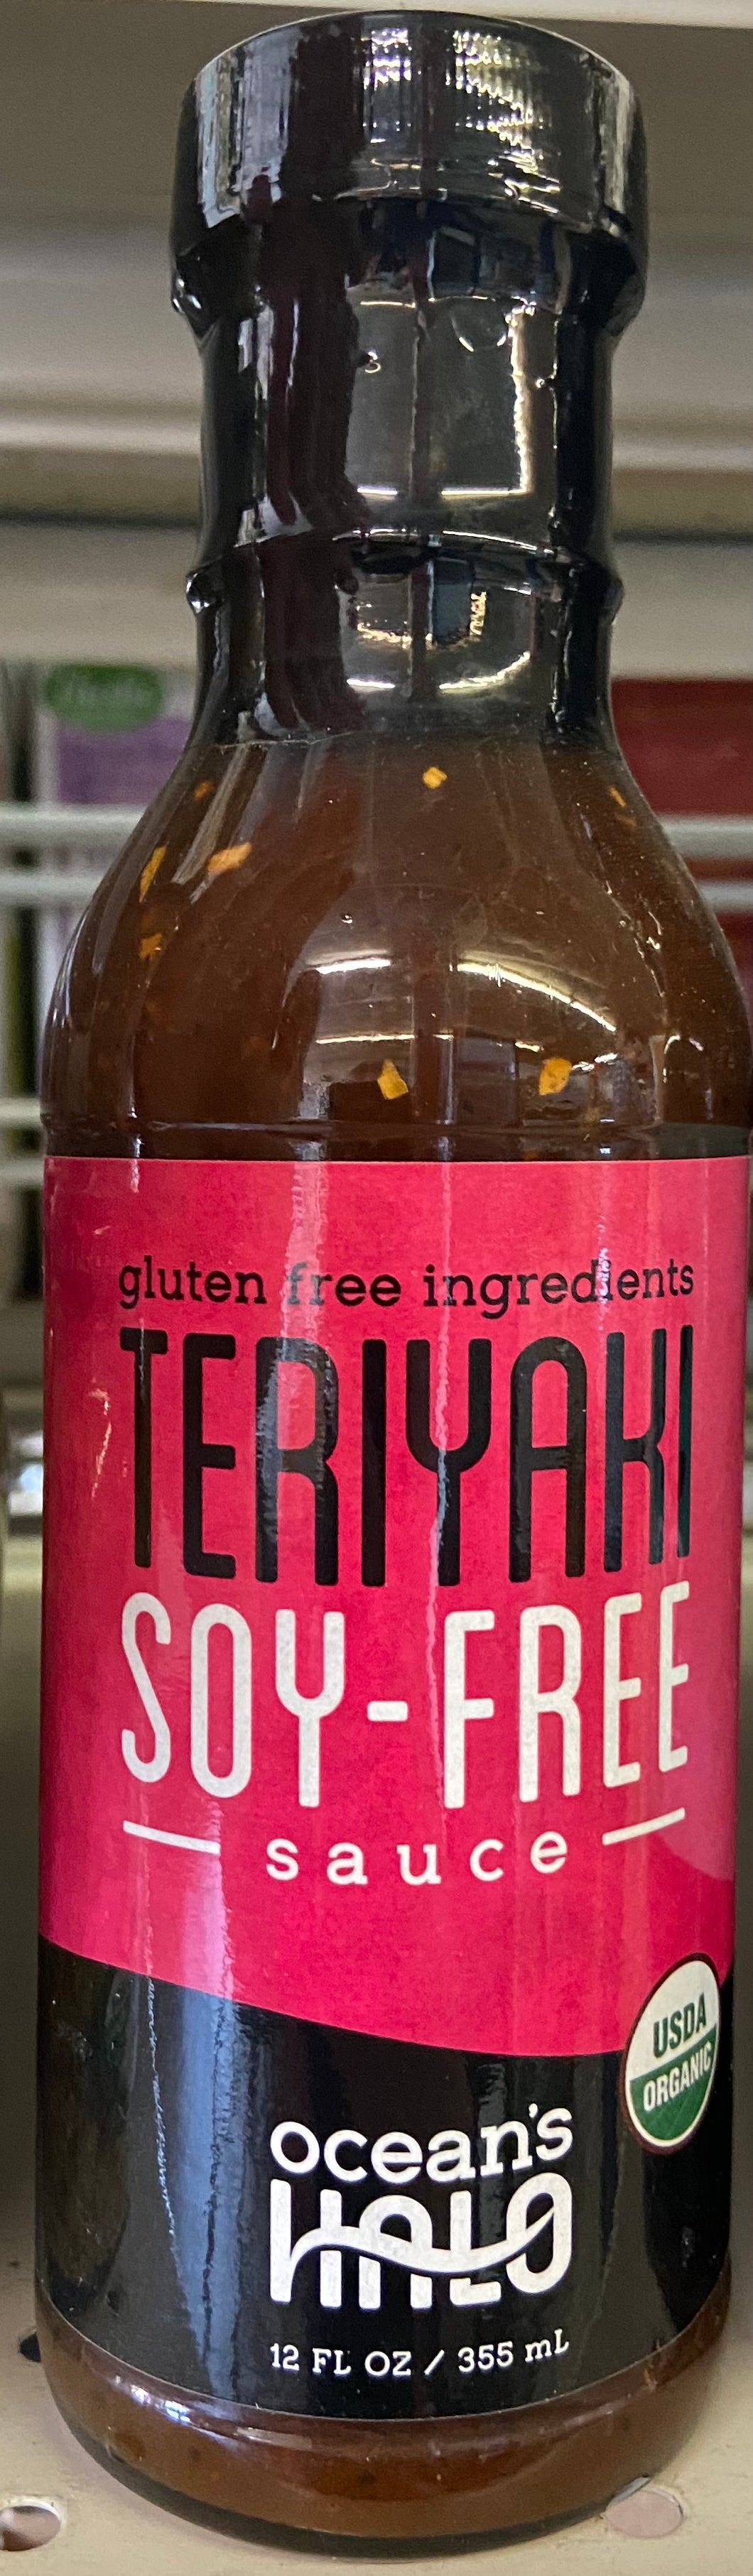 Teriyaki Sauce, Organic, Ocean's Halo